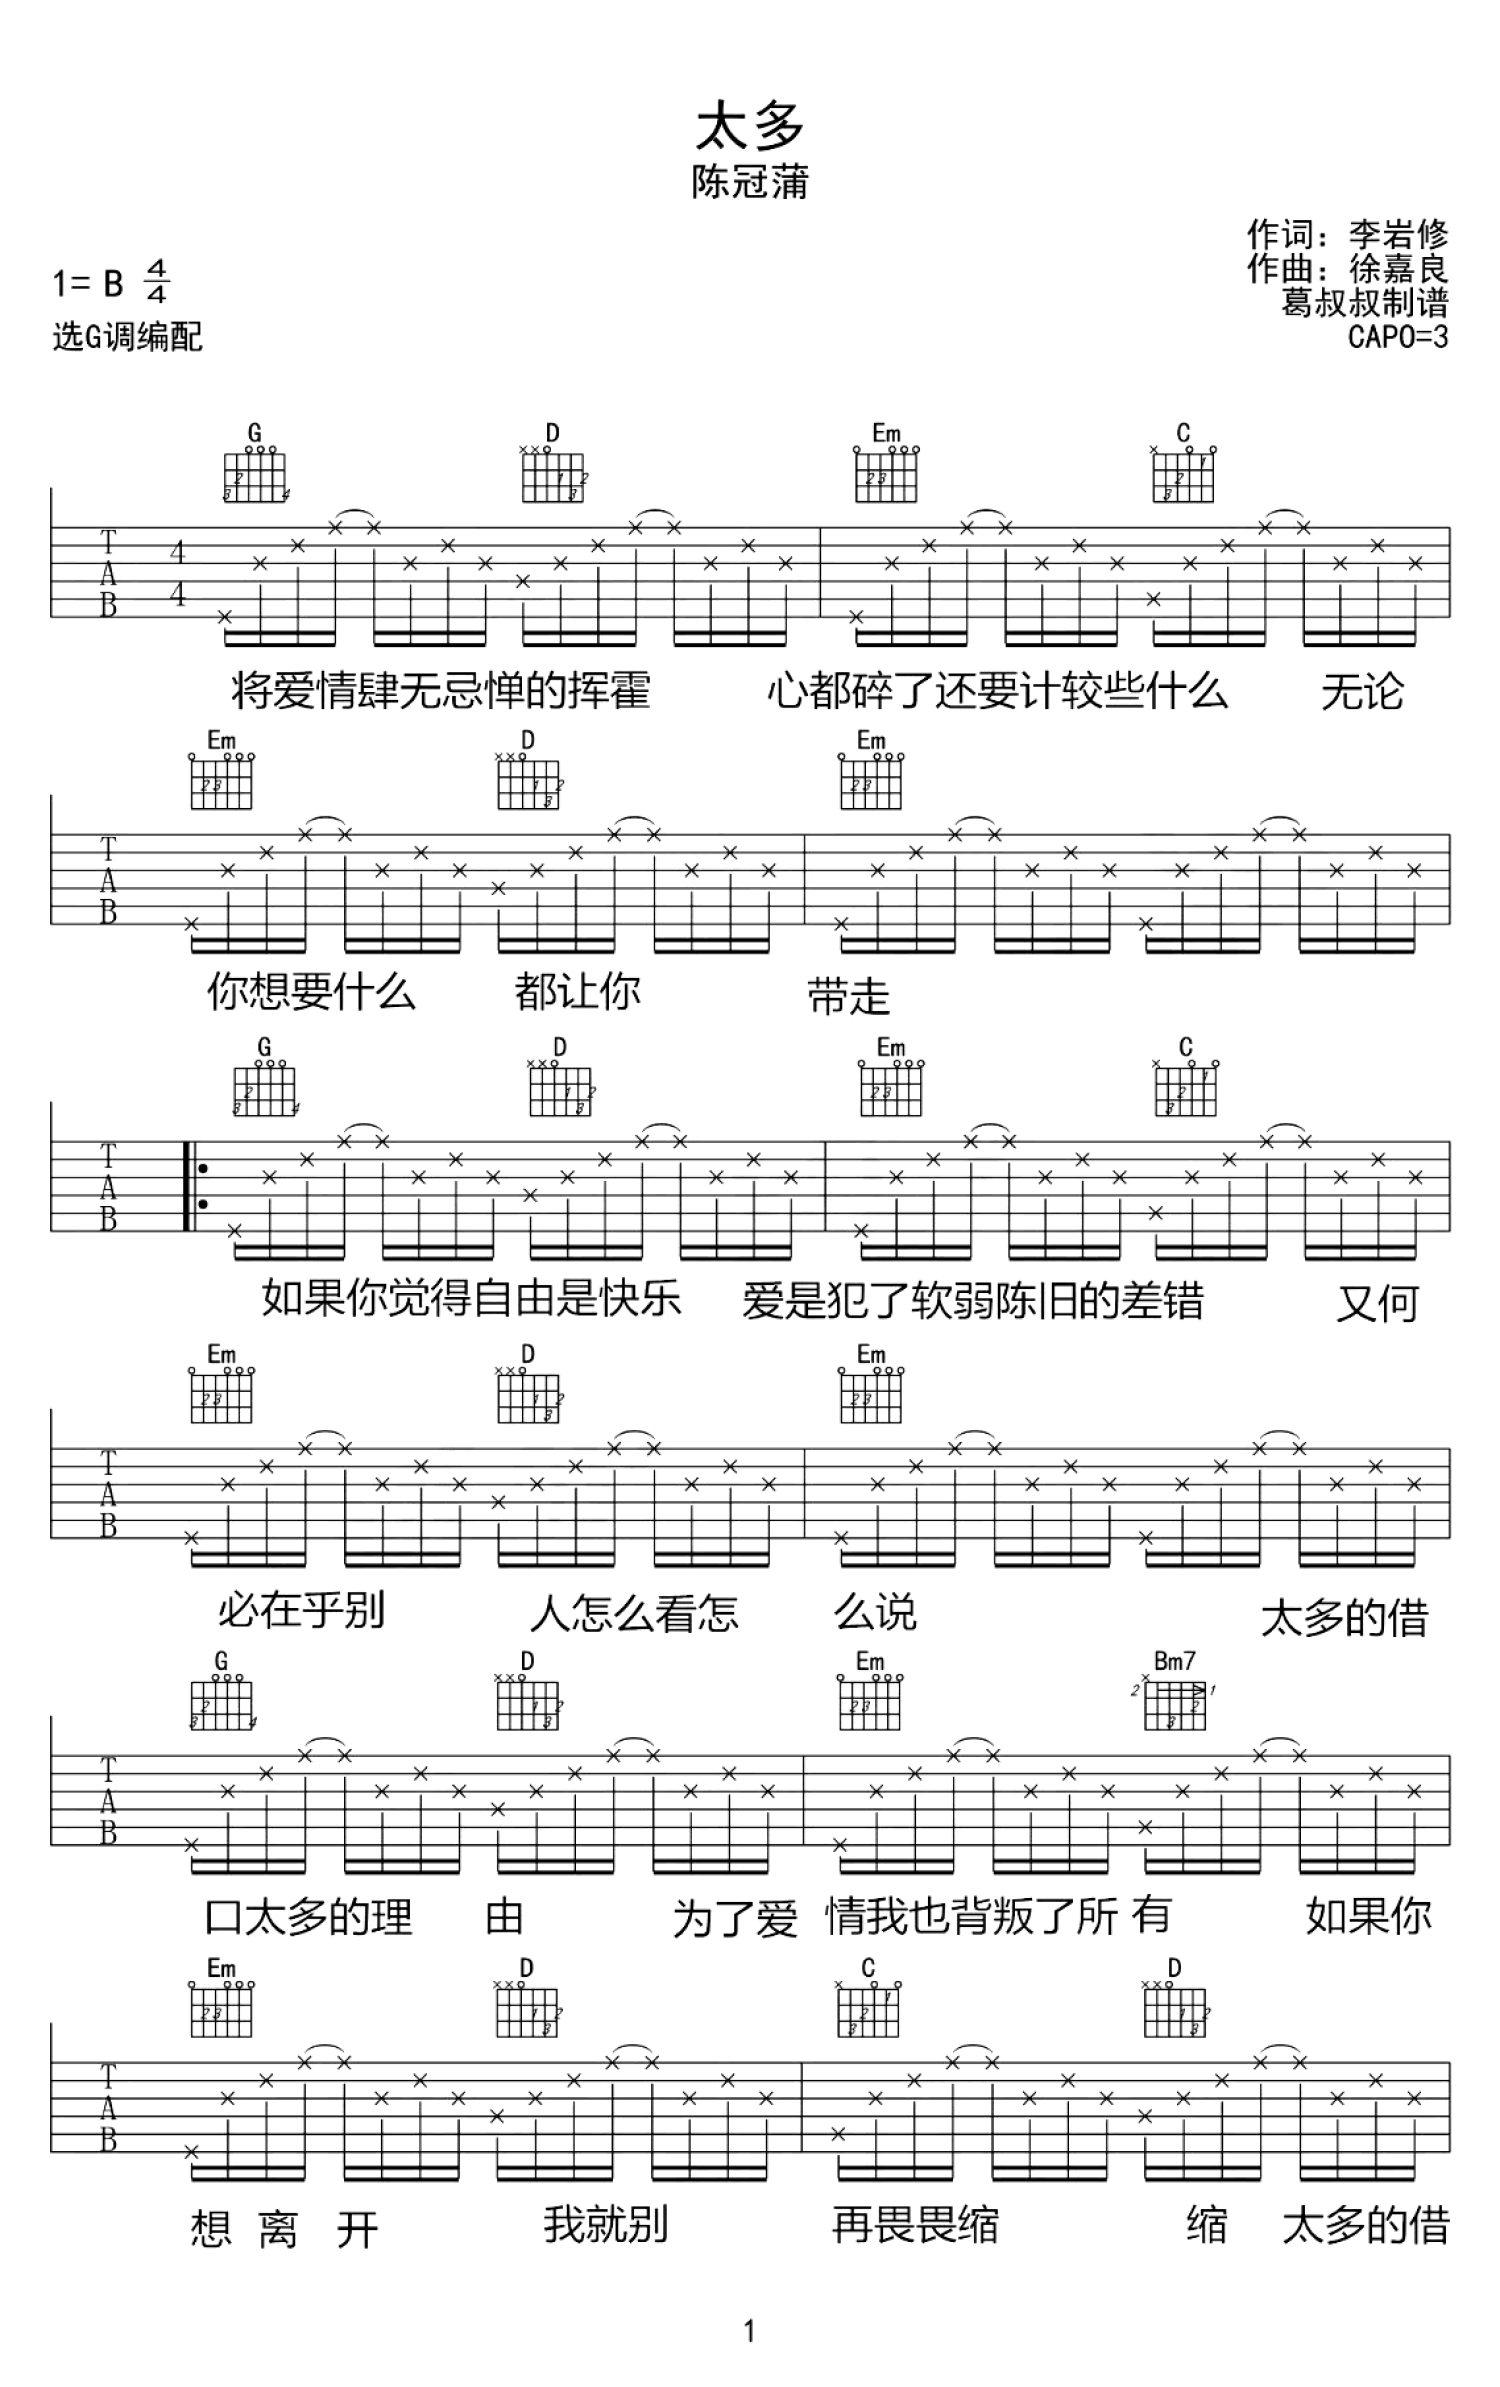 阿冗 - 与我无关(音艺吉他专家弹唱教学:第二季第44集) [弹唱 伴奏 教学] 吉他谱